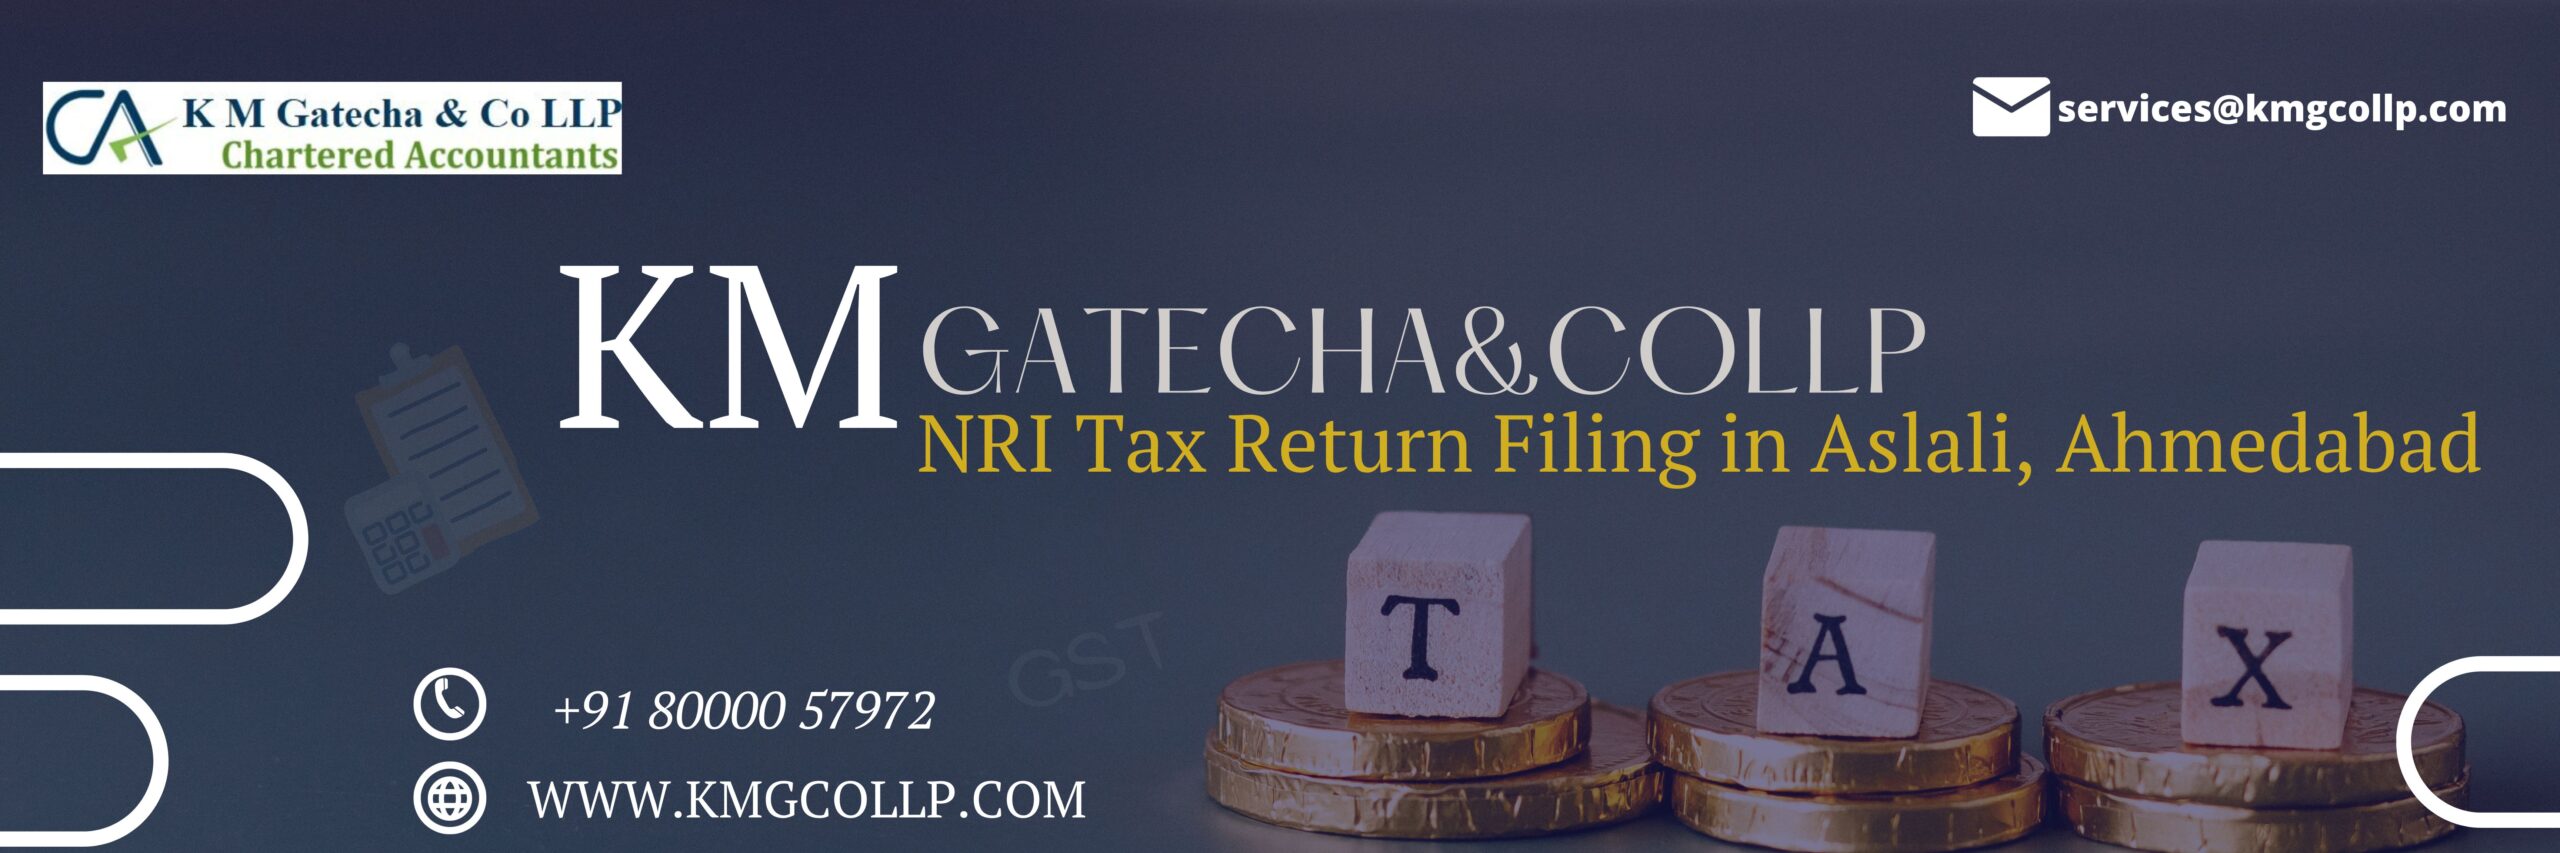 NRI Tax Return Filing in Aslali